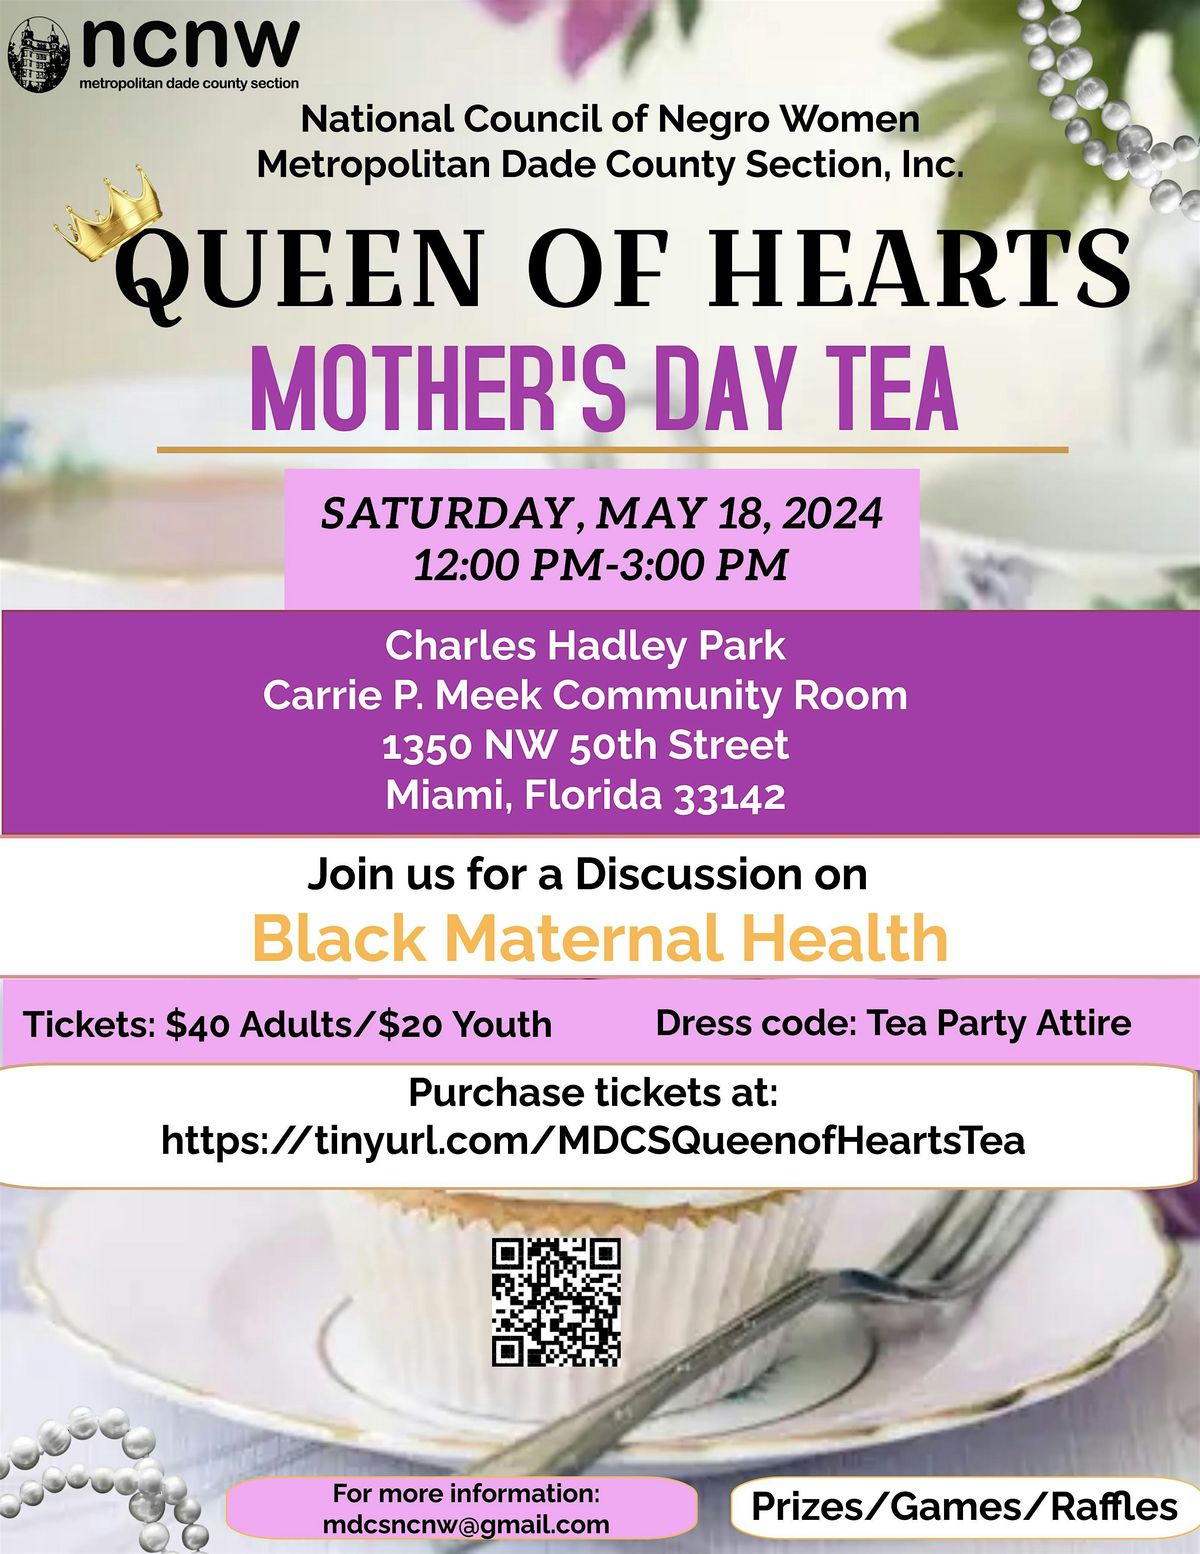 Queen of Hearts Mother's Day Tea